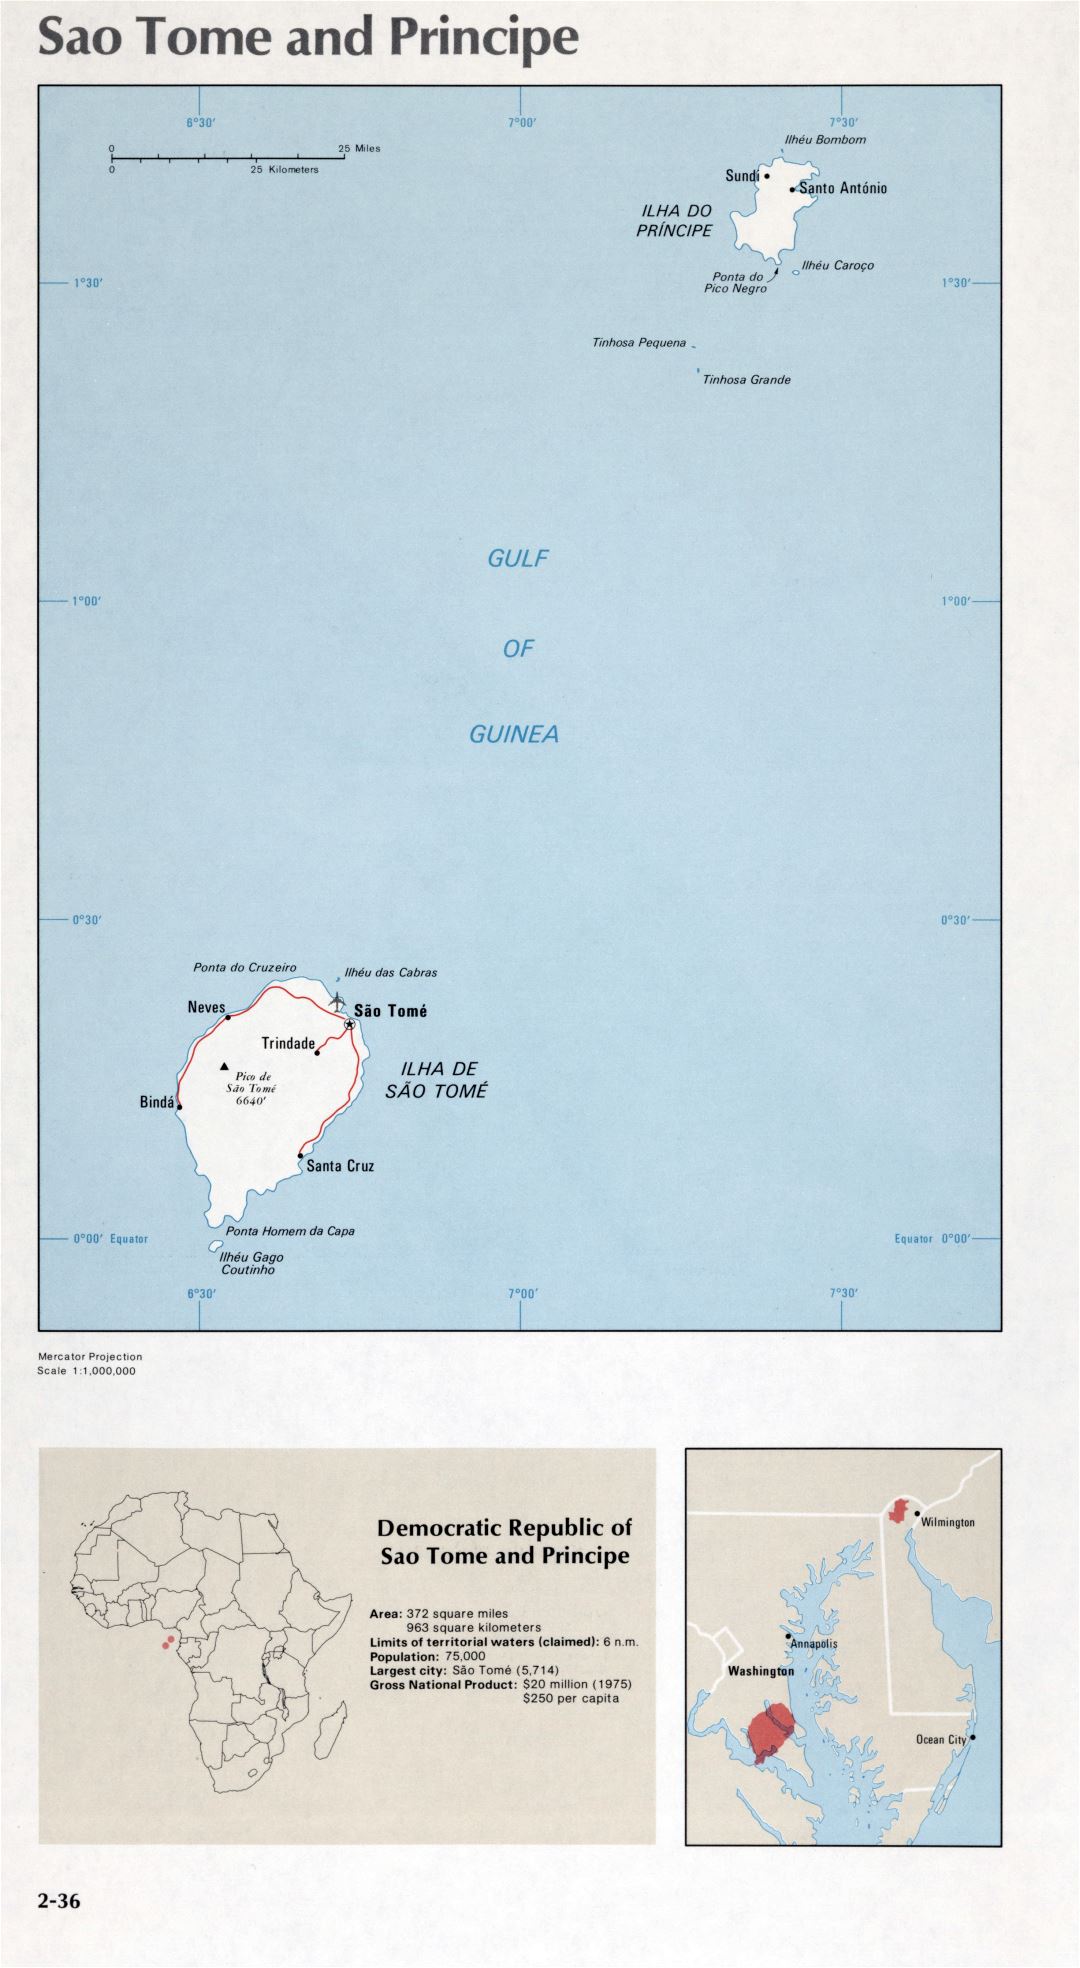 Map of Sao Tome and Principe (2-36)